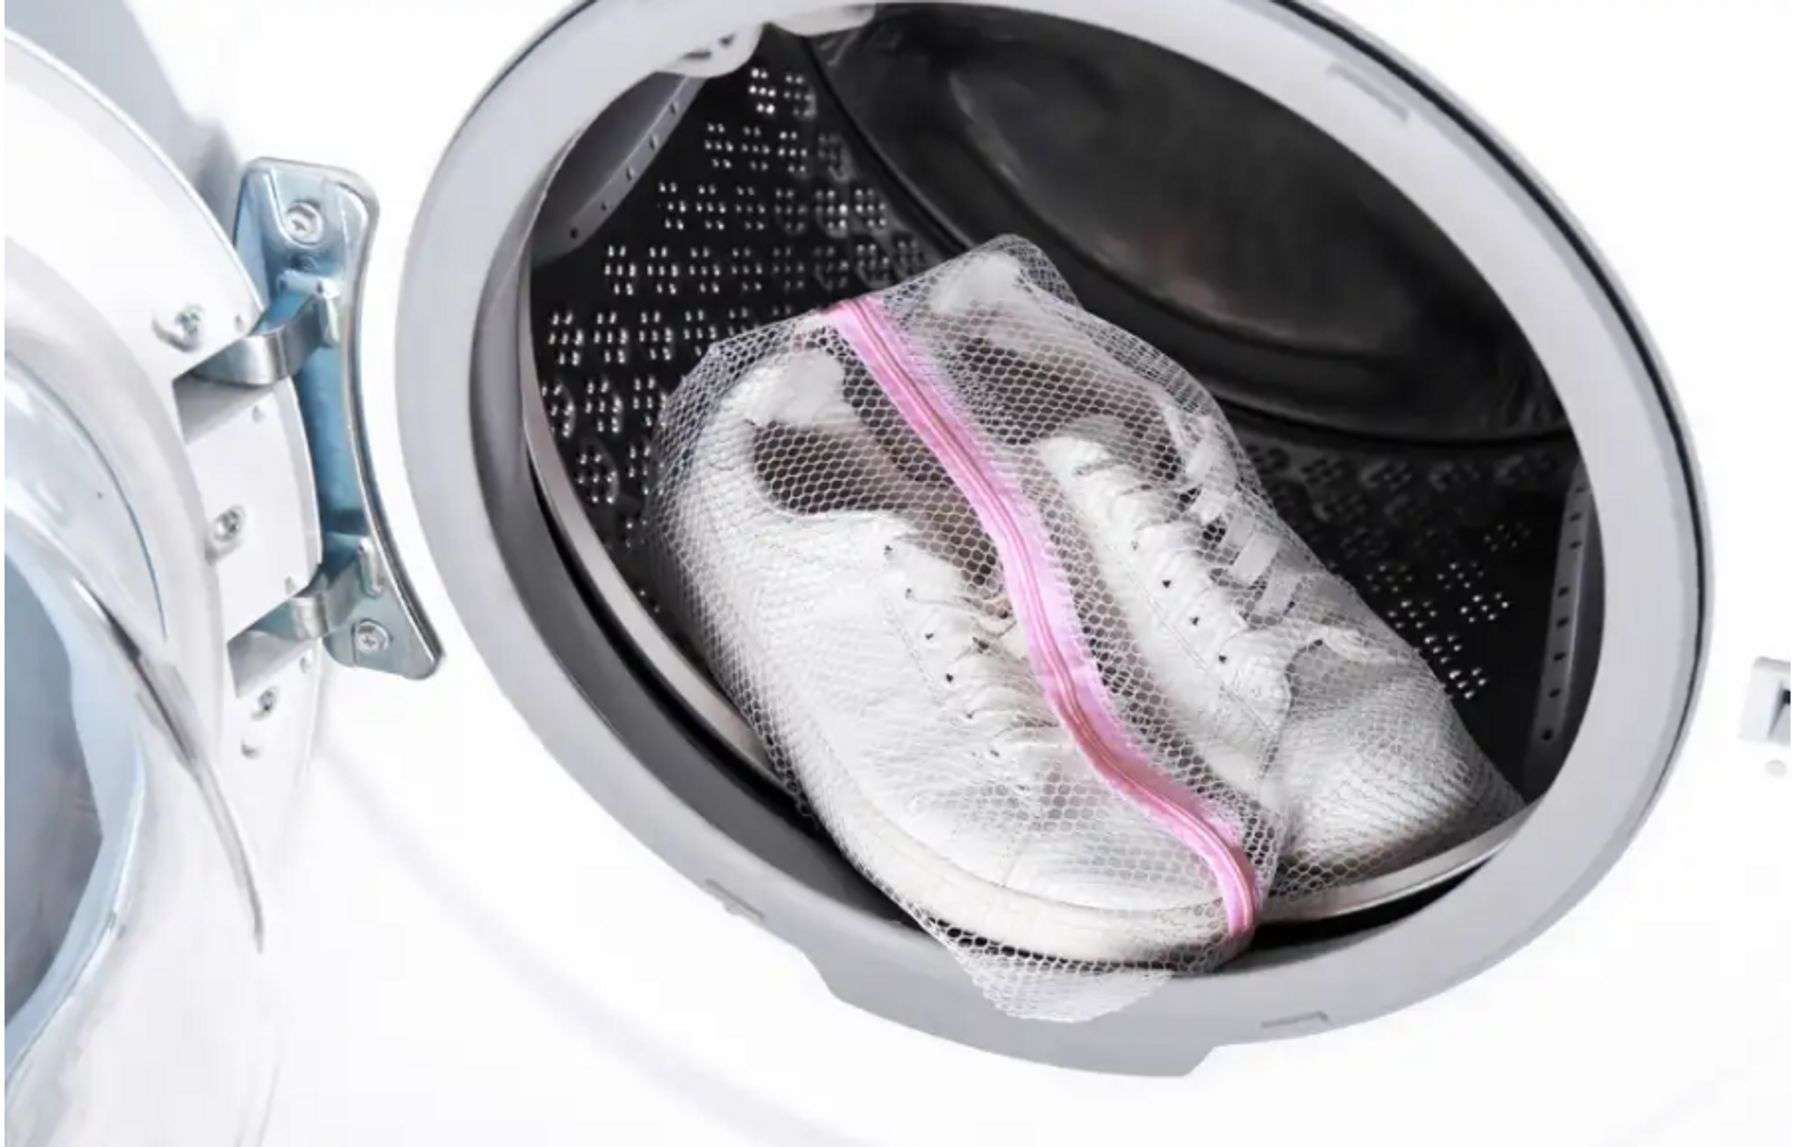 Máy giặt chỉ thích hợp giặt một số loại giày vải tốt và đặc biệt là không nên dùng cho giày da | Cleanipedia 